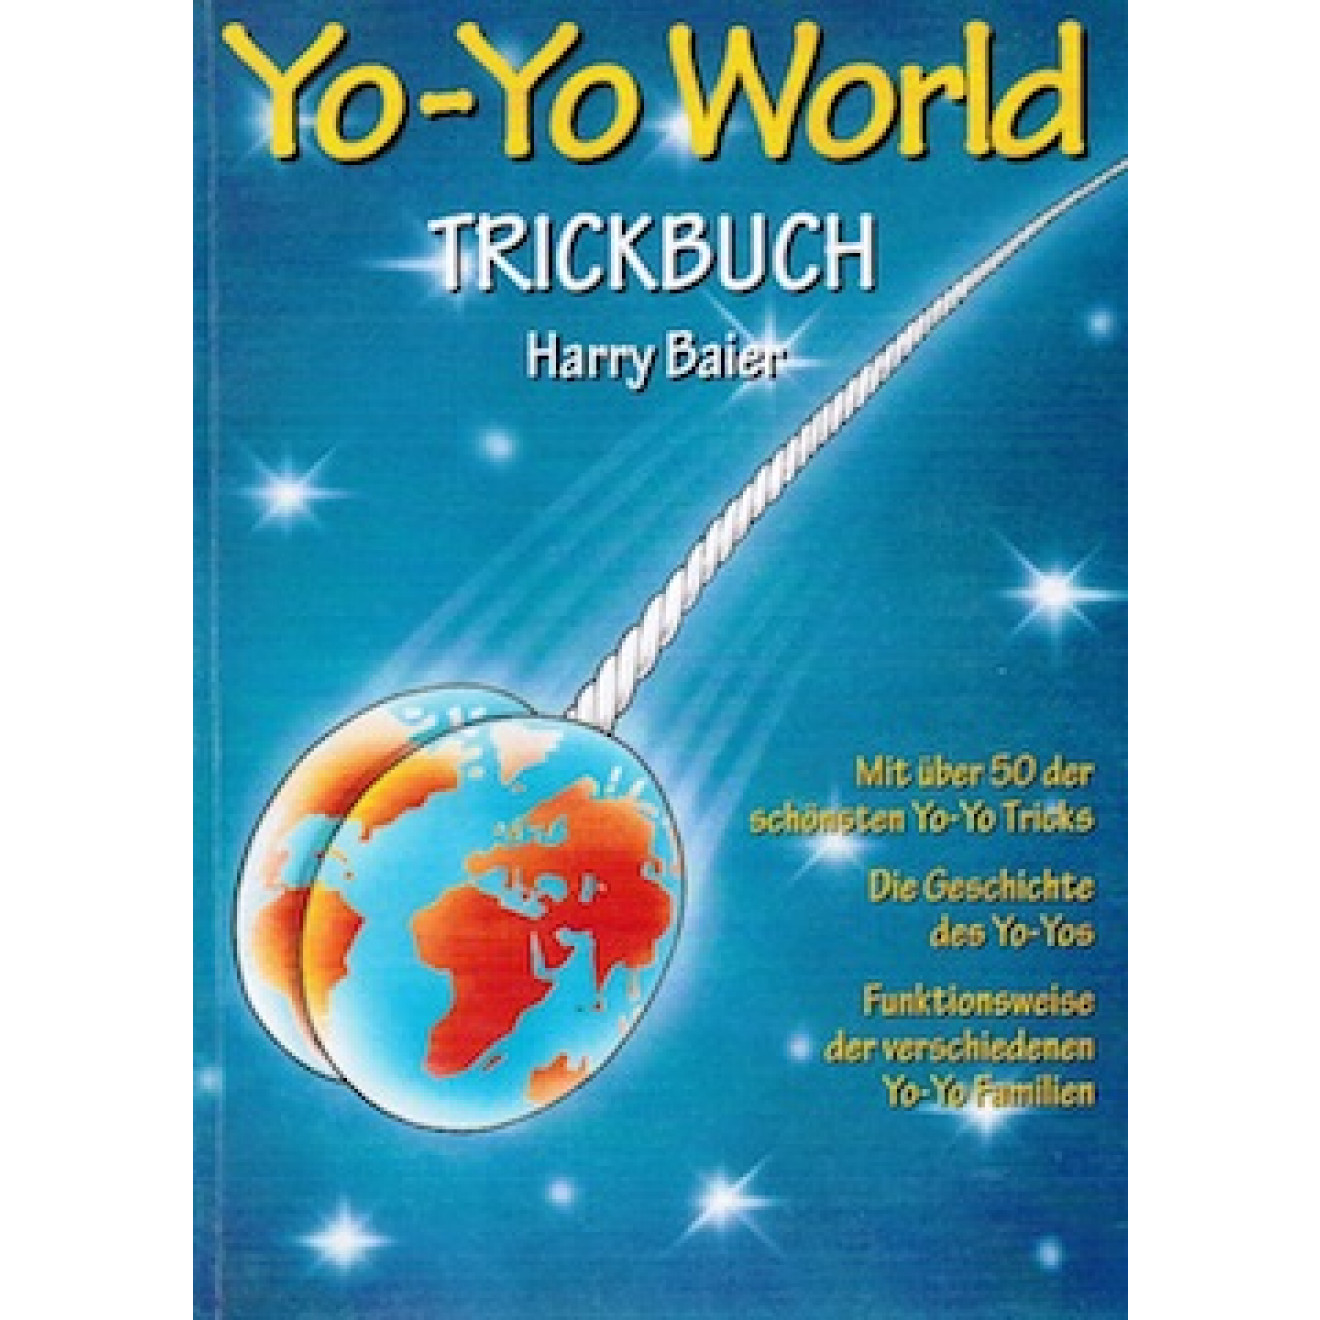 Yo-Yo World Trickbuch